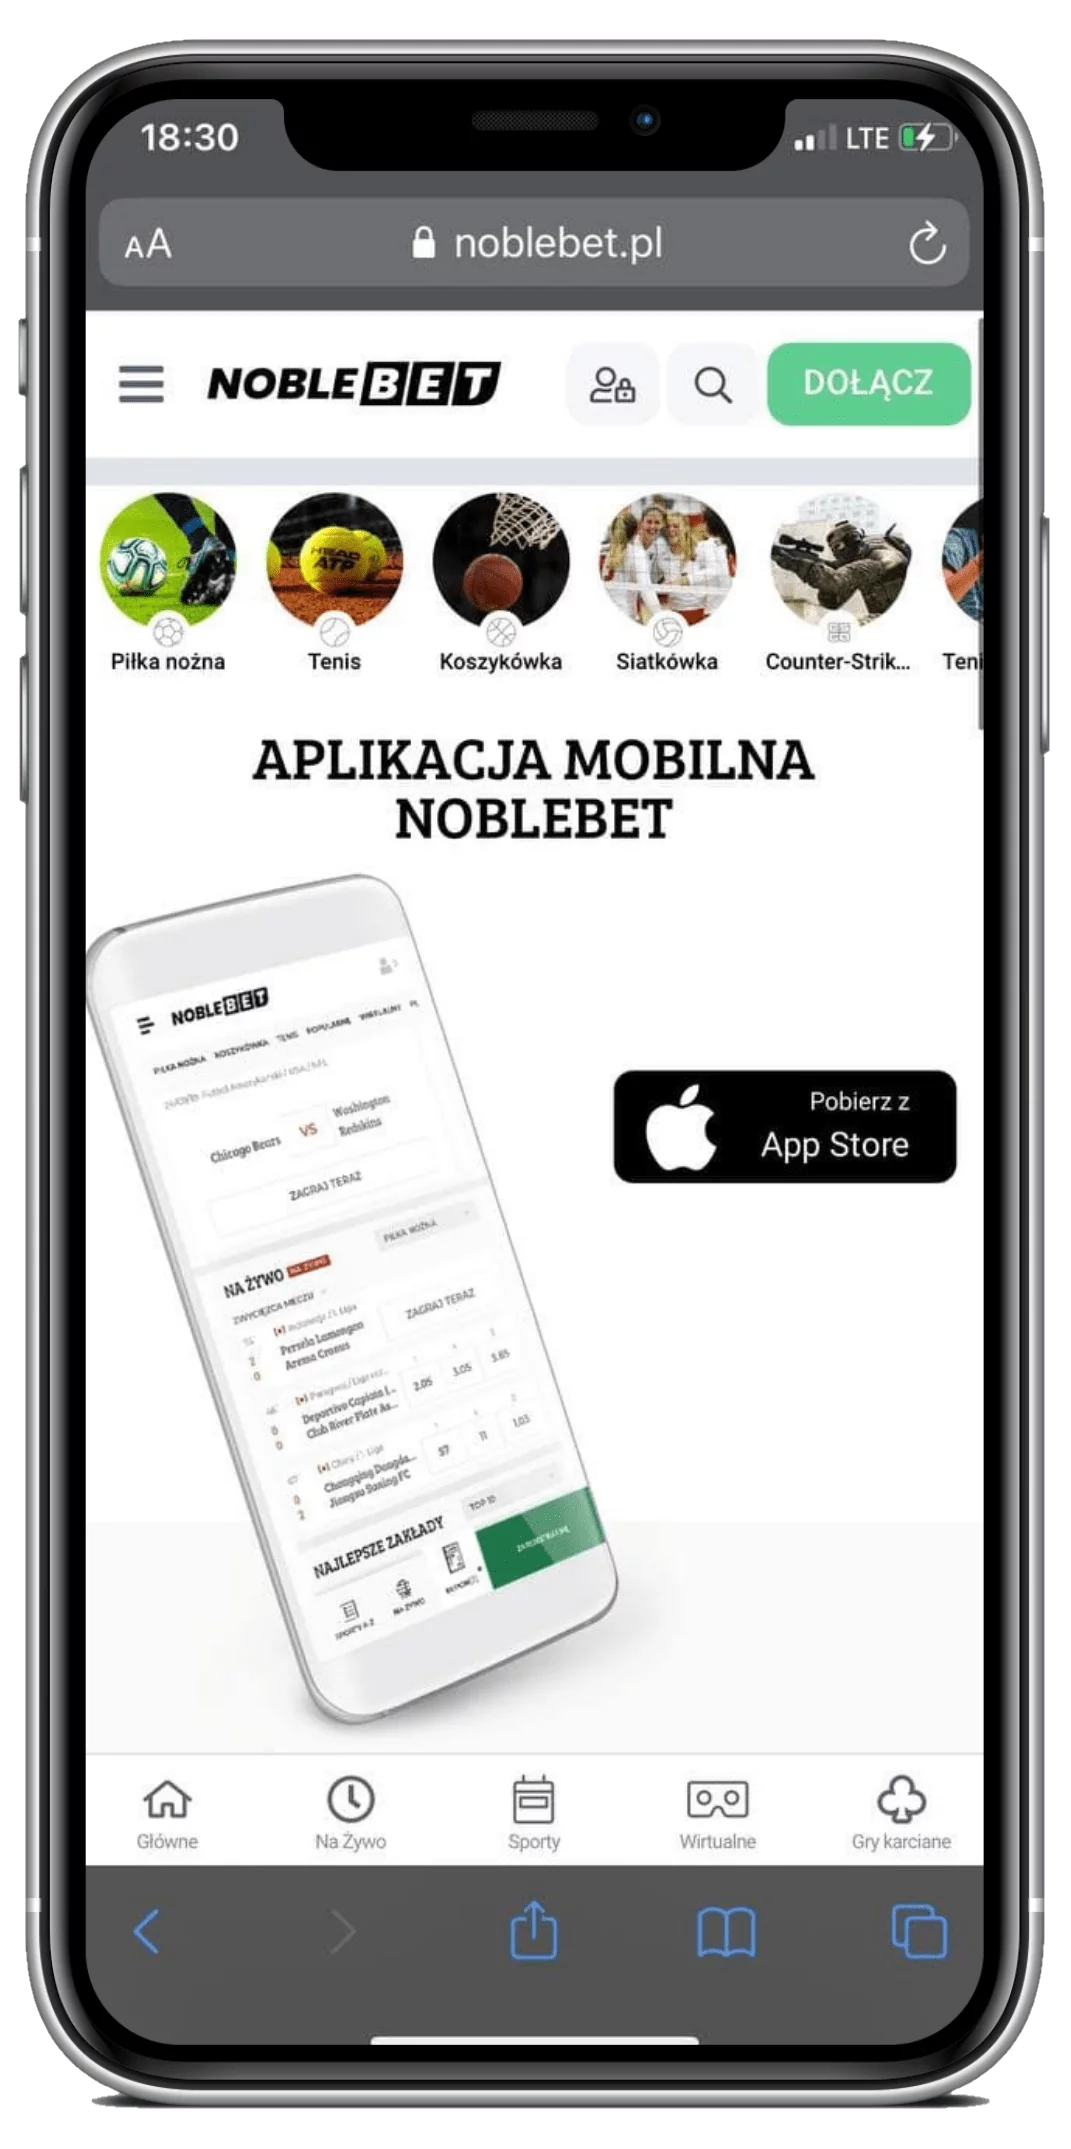 Wejdź na oficjalną stronę legalnego bukmachera Noblebet i przejdź do rozdziału aplikacji mobilnej w menu, żeby pobrać aplikację mobilną na Android lub IOS